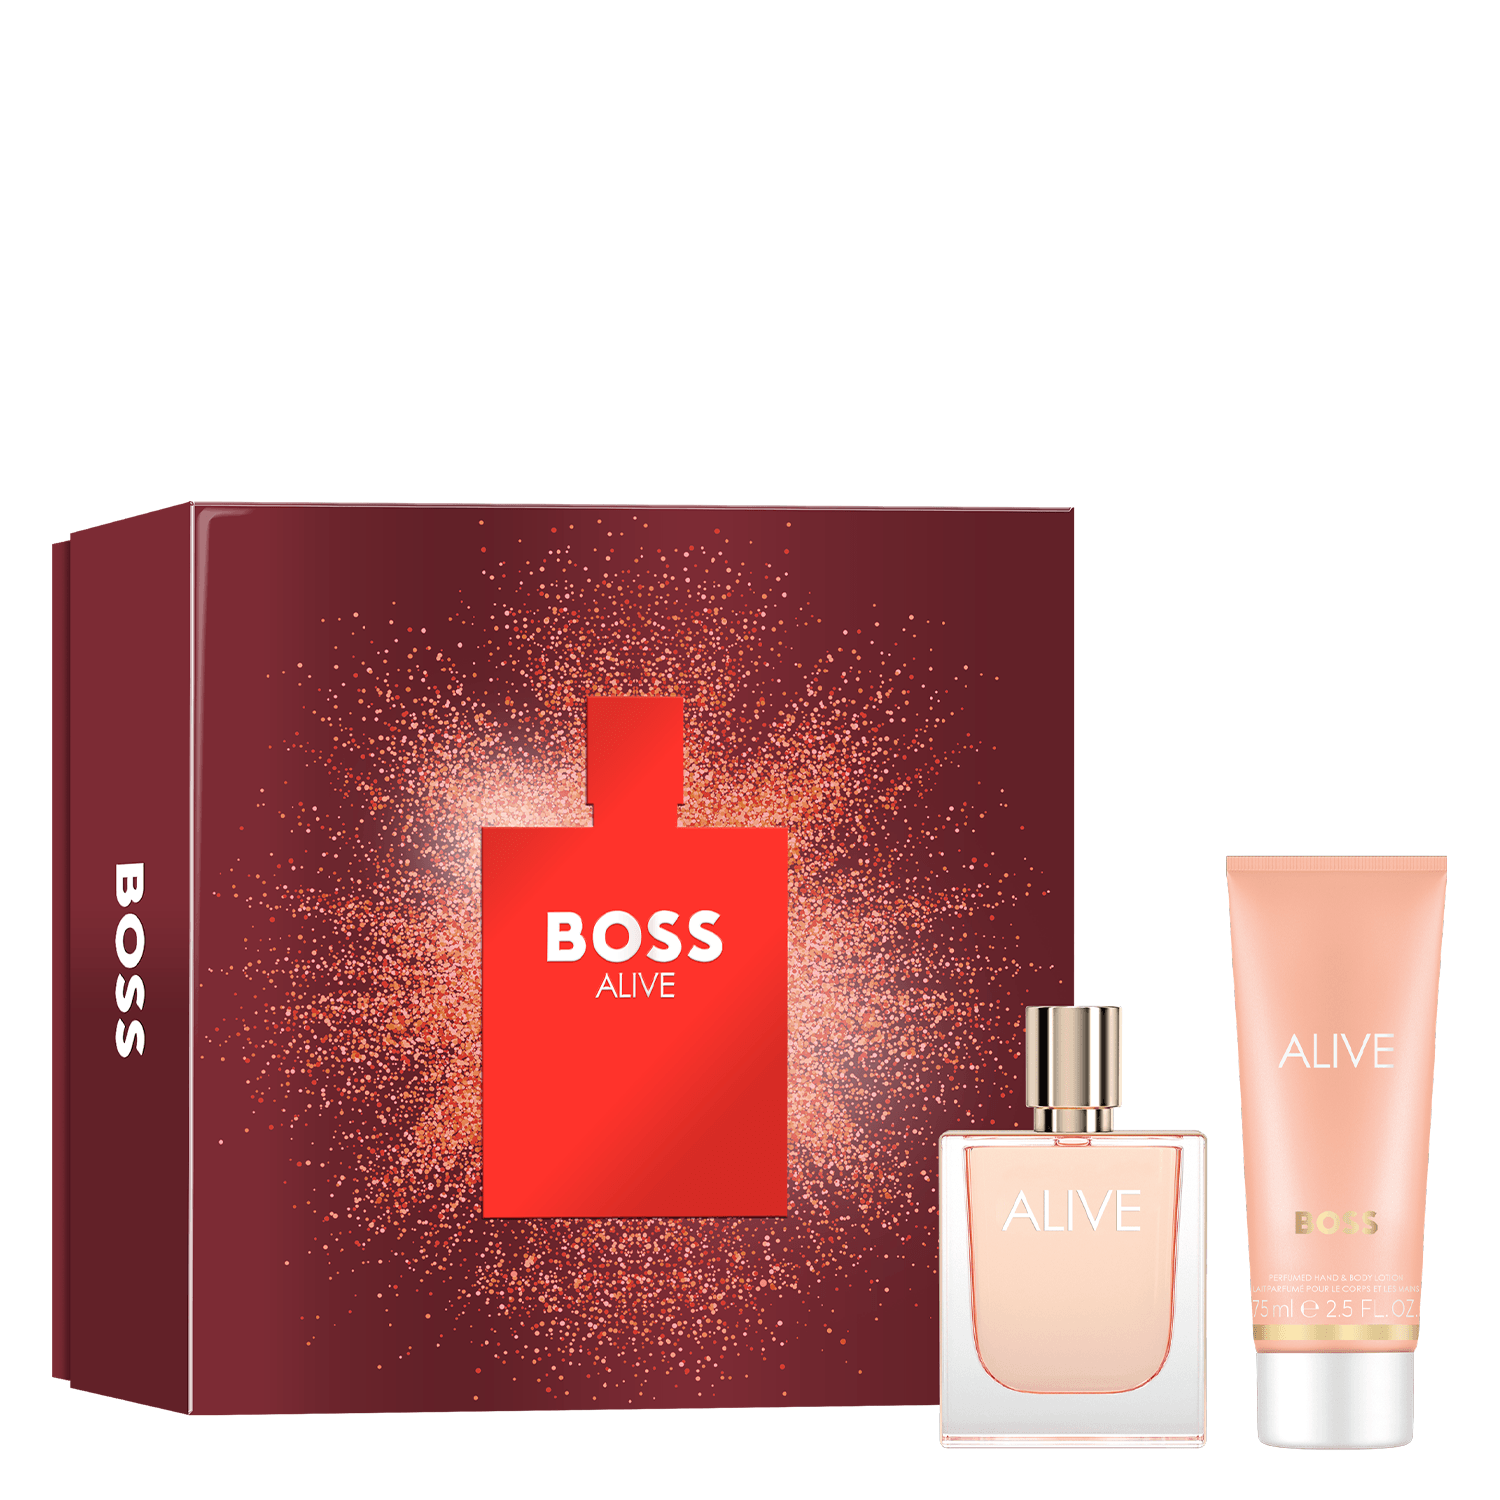 Product image from Boss Alive - Eau de Parfum & Body Lotion